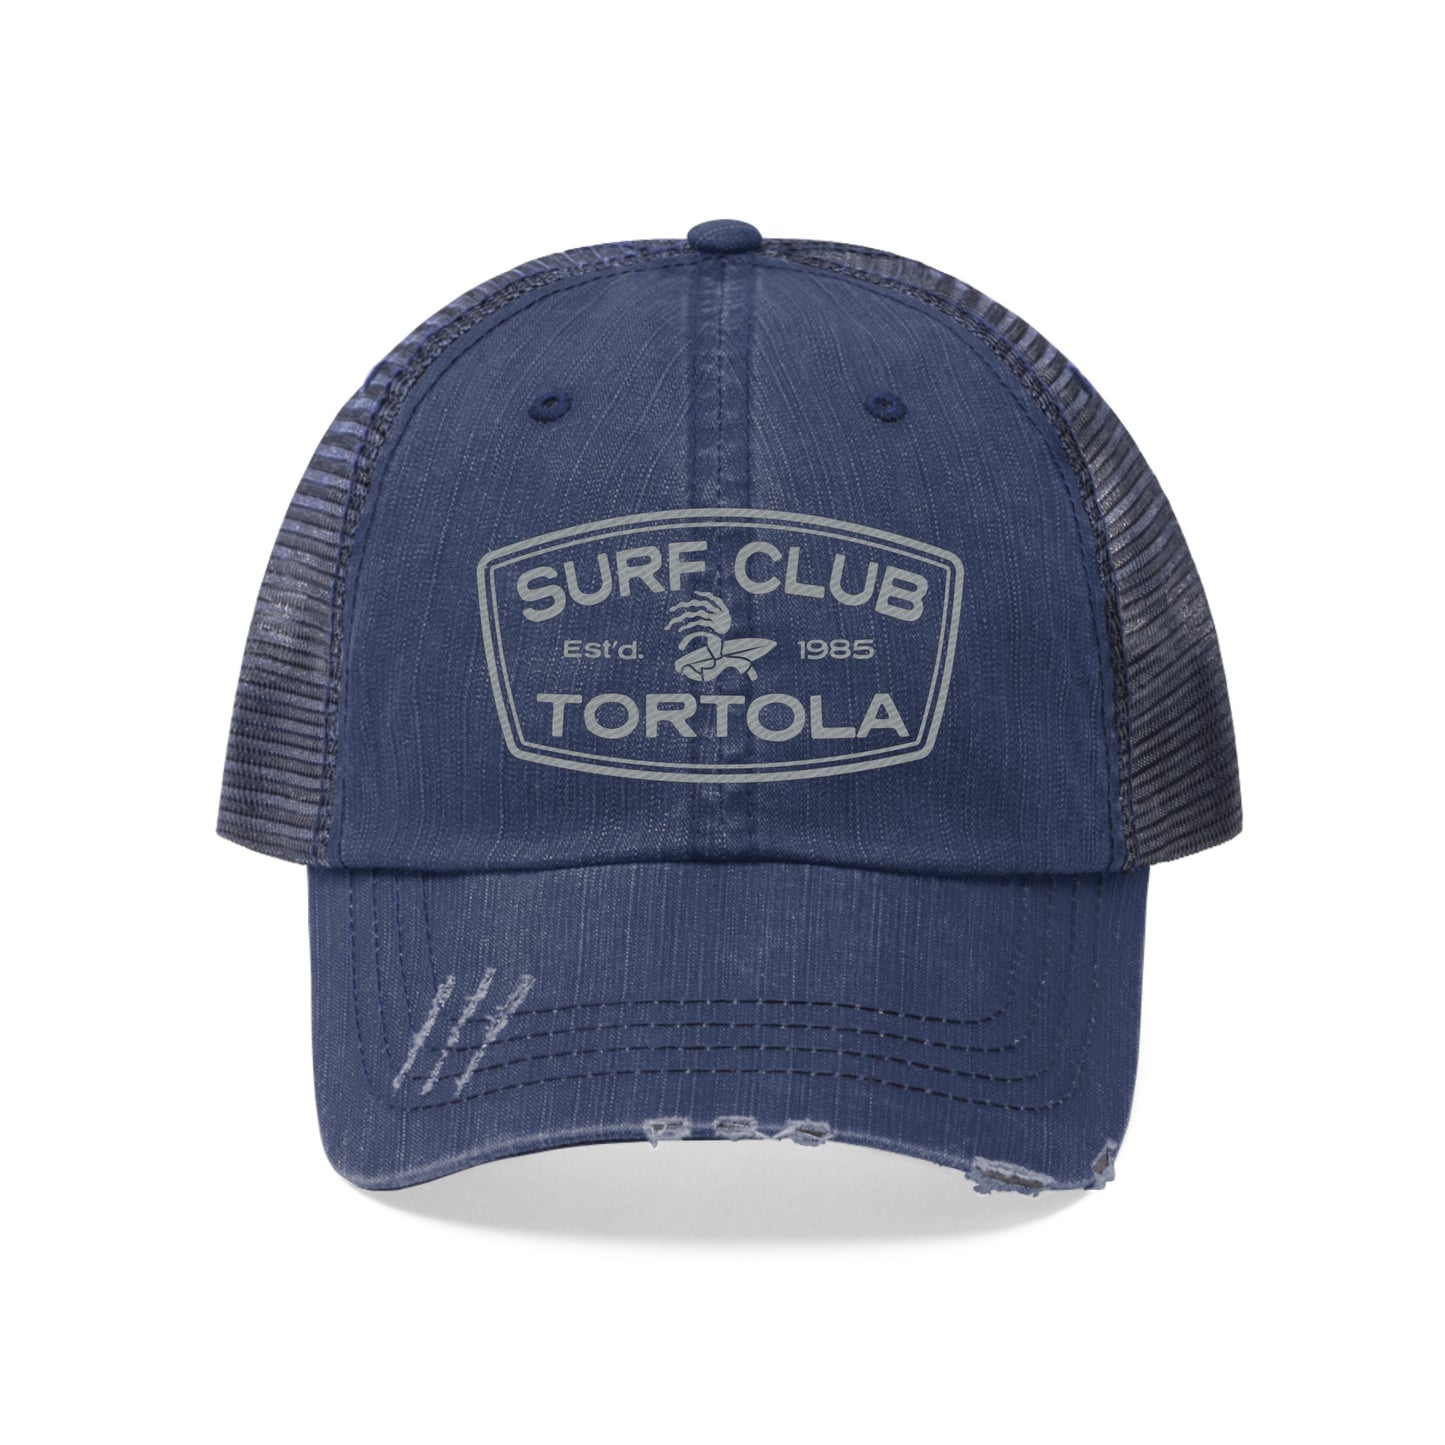 "Surf Club Tortola" Unisex Trucker Hat (Embroidered)